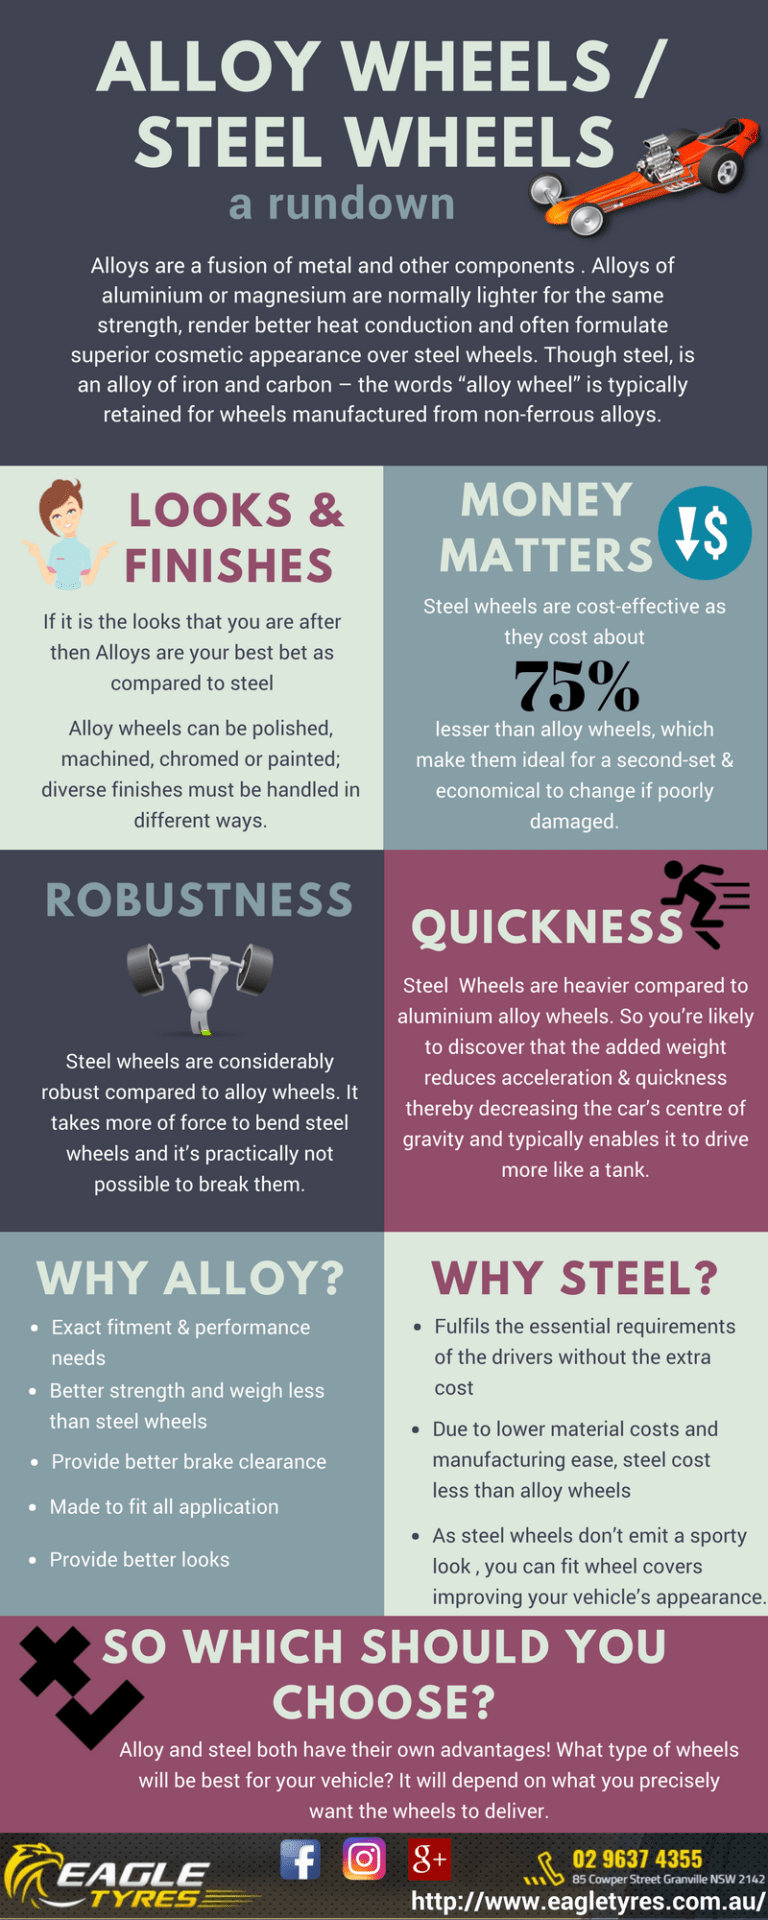 Alloy-Wheels-vs-Steel-Wheels